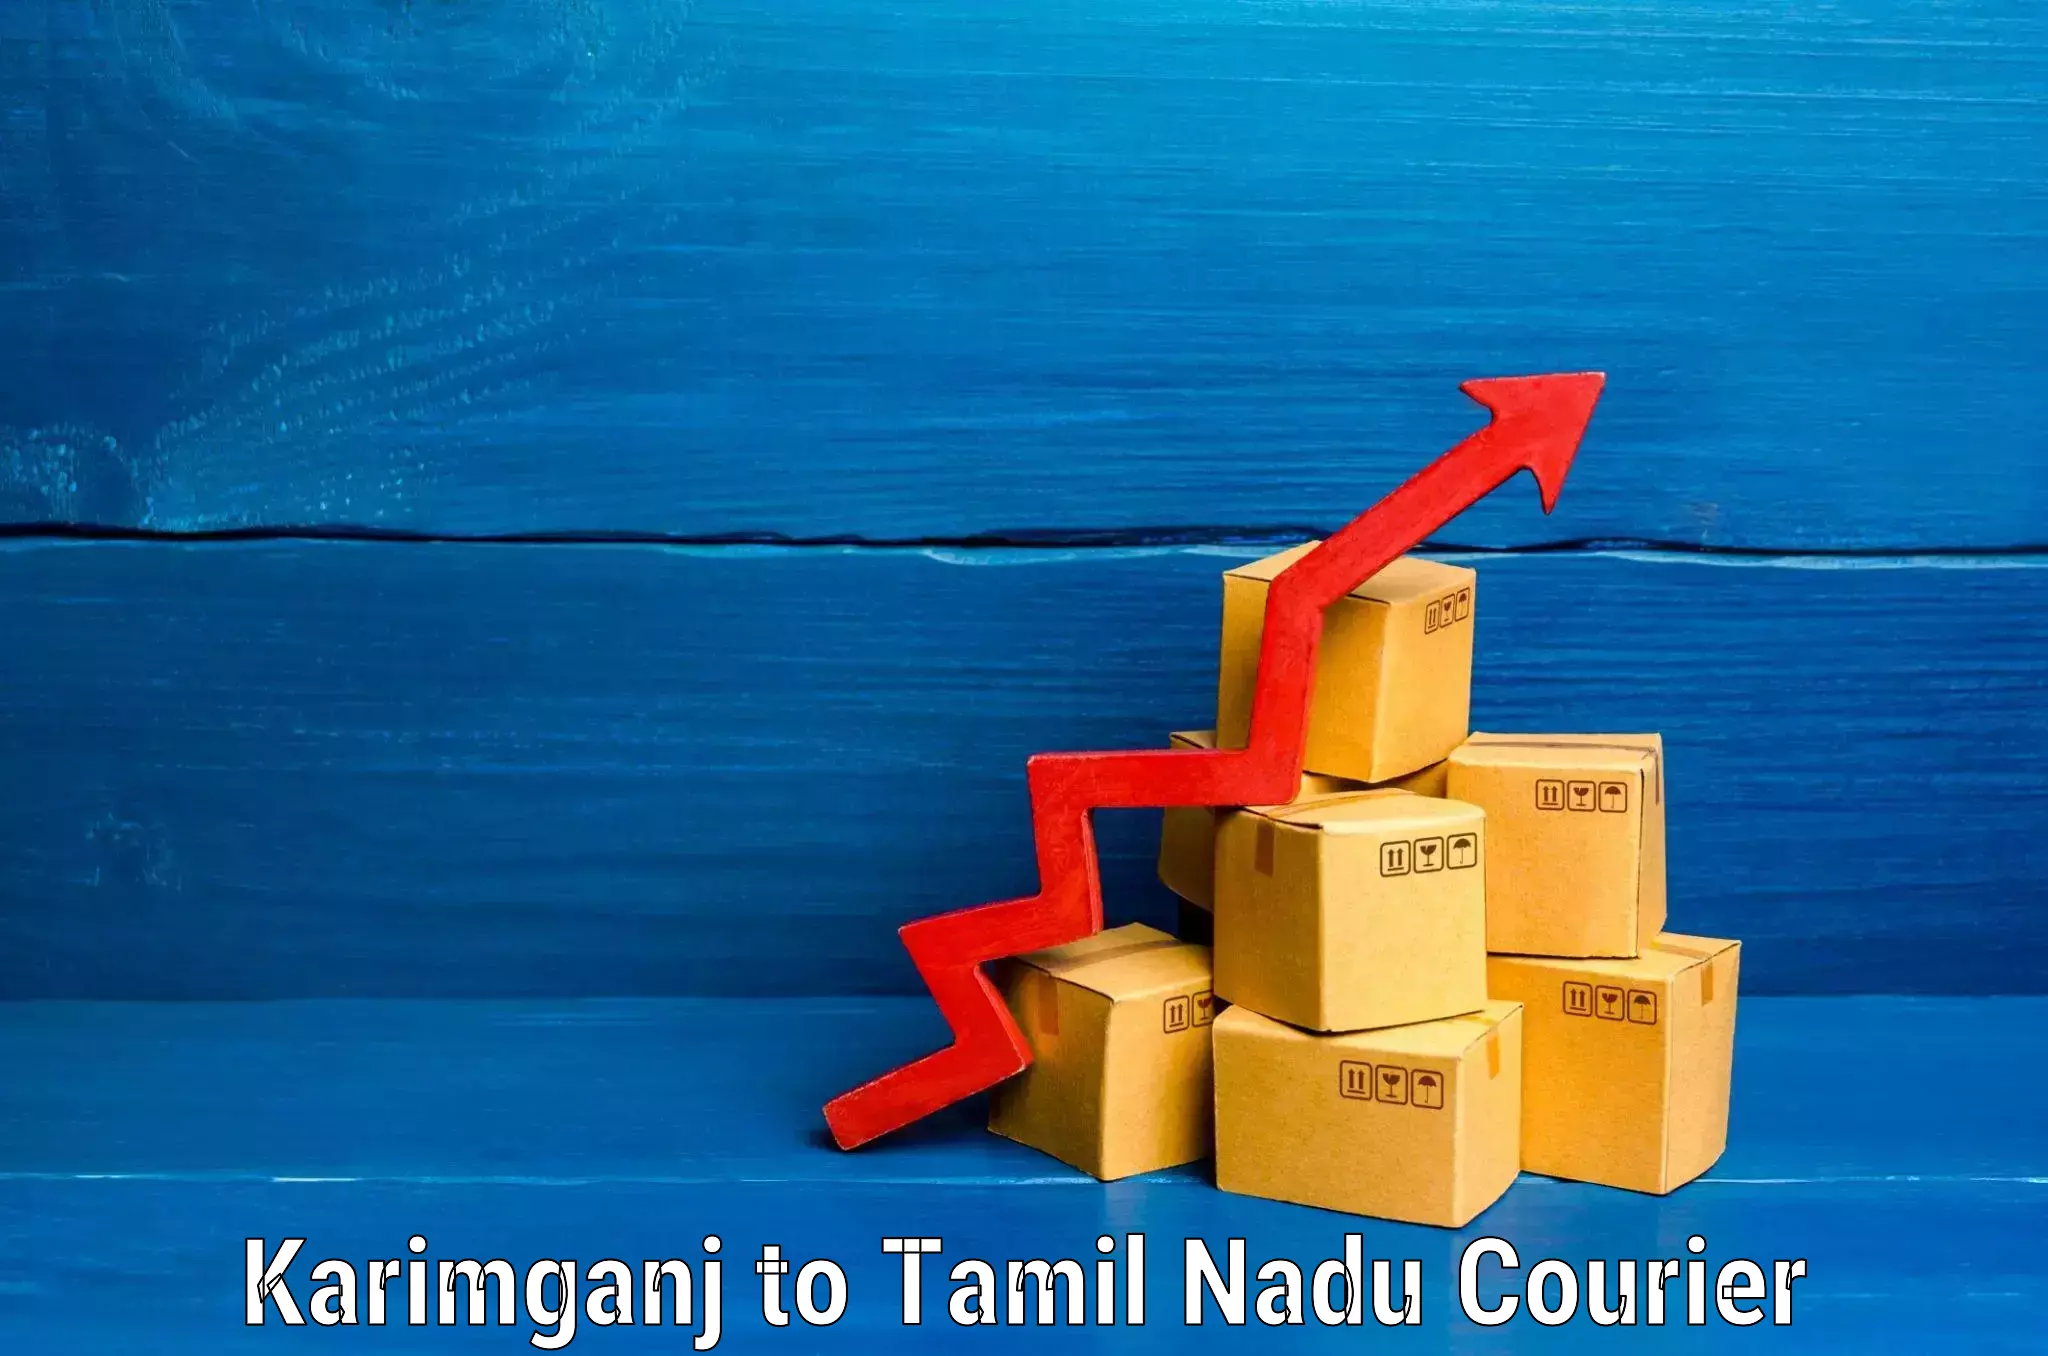 Personalized luggage shipping Karimganj to Tamil Nadu